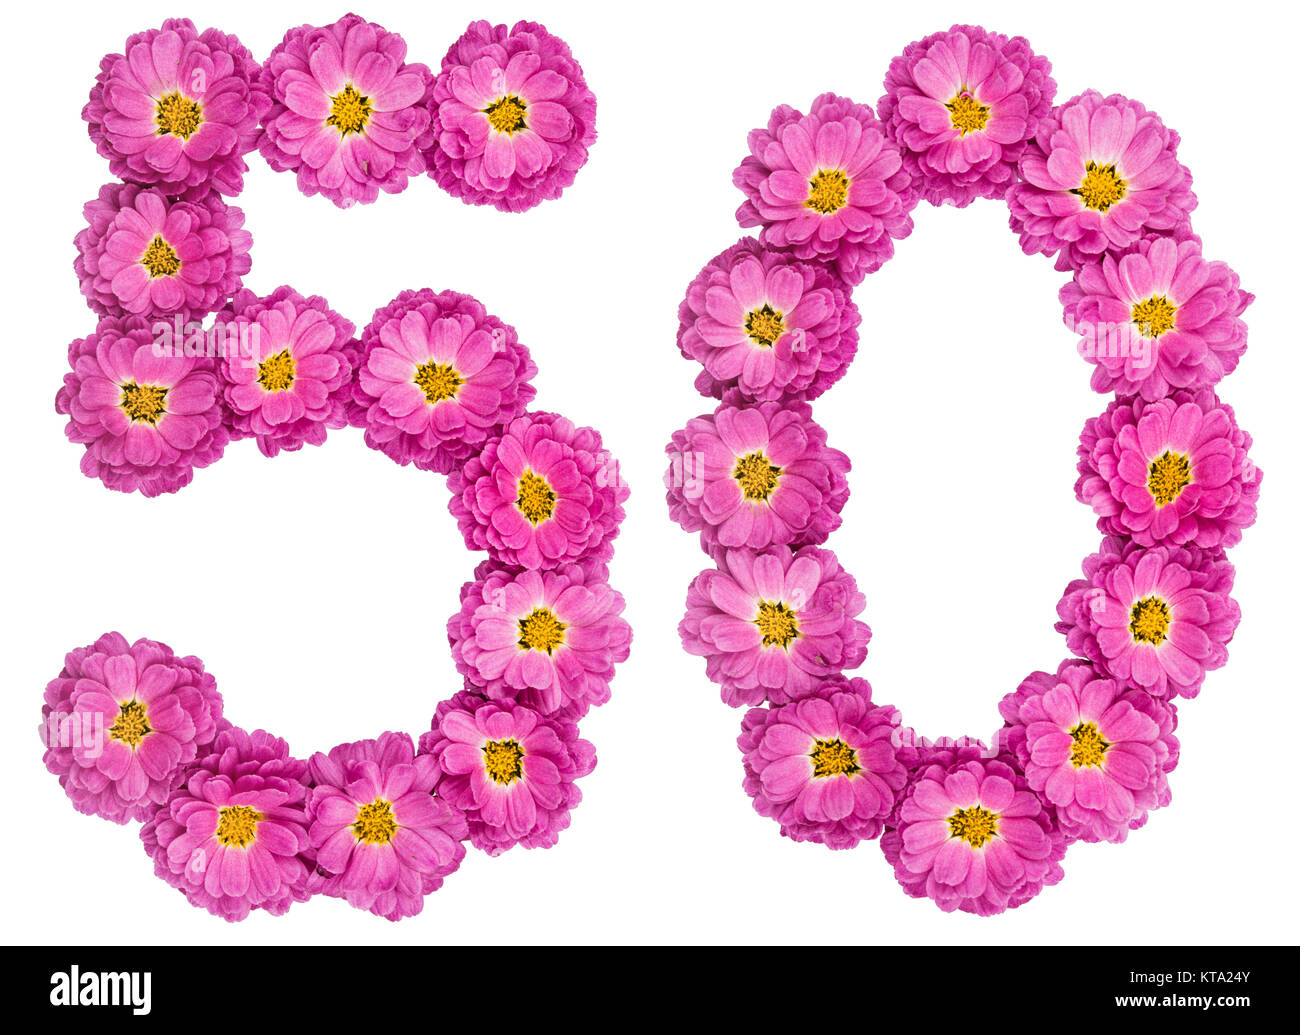 Numero arabo 50, cinquanta, dai fiori di crisantemo, isolato su sfondo bianco Foto Stock